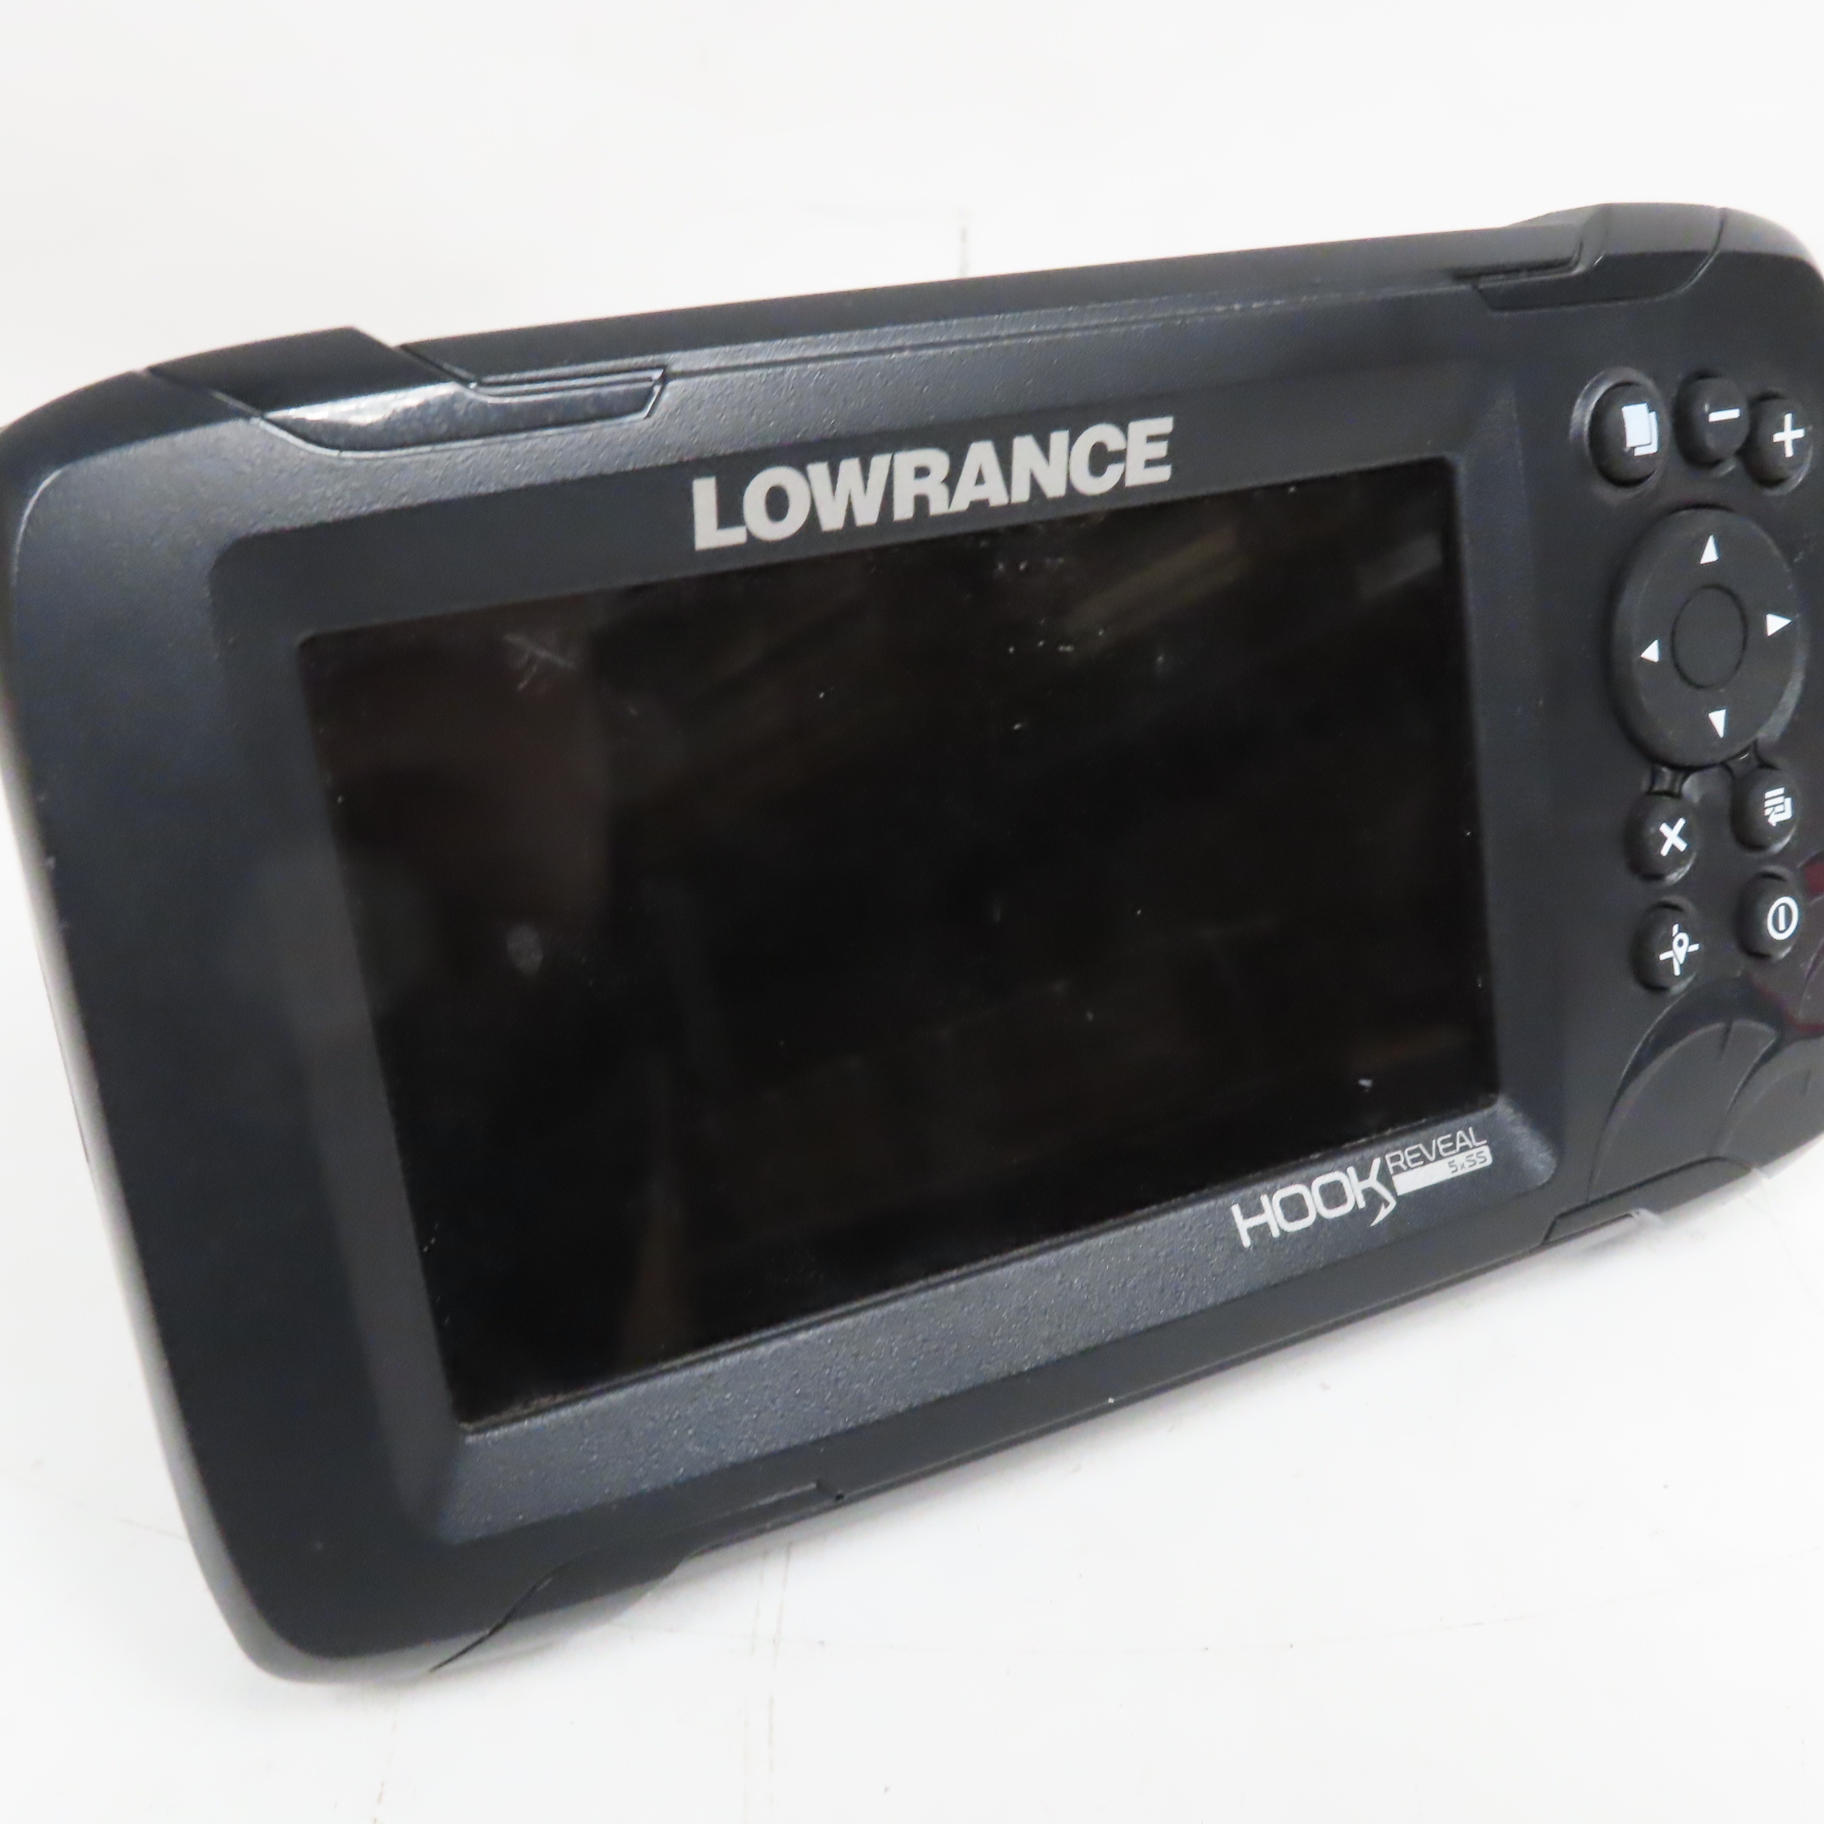 Lowrance HOOK Reveal 5 SplitShot 5 Digital CHIRP/Sonar Fishfinder